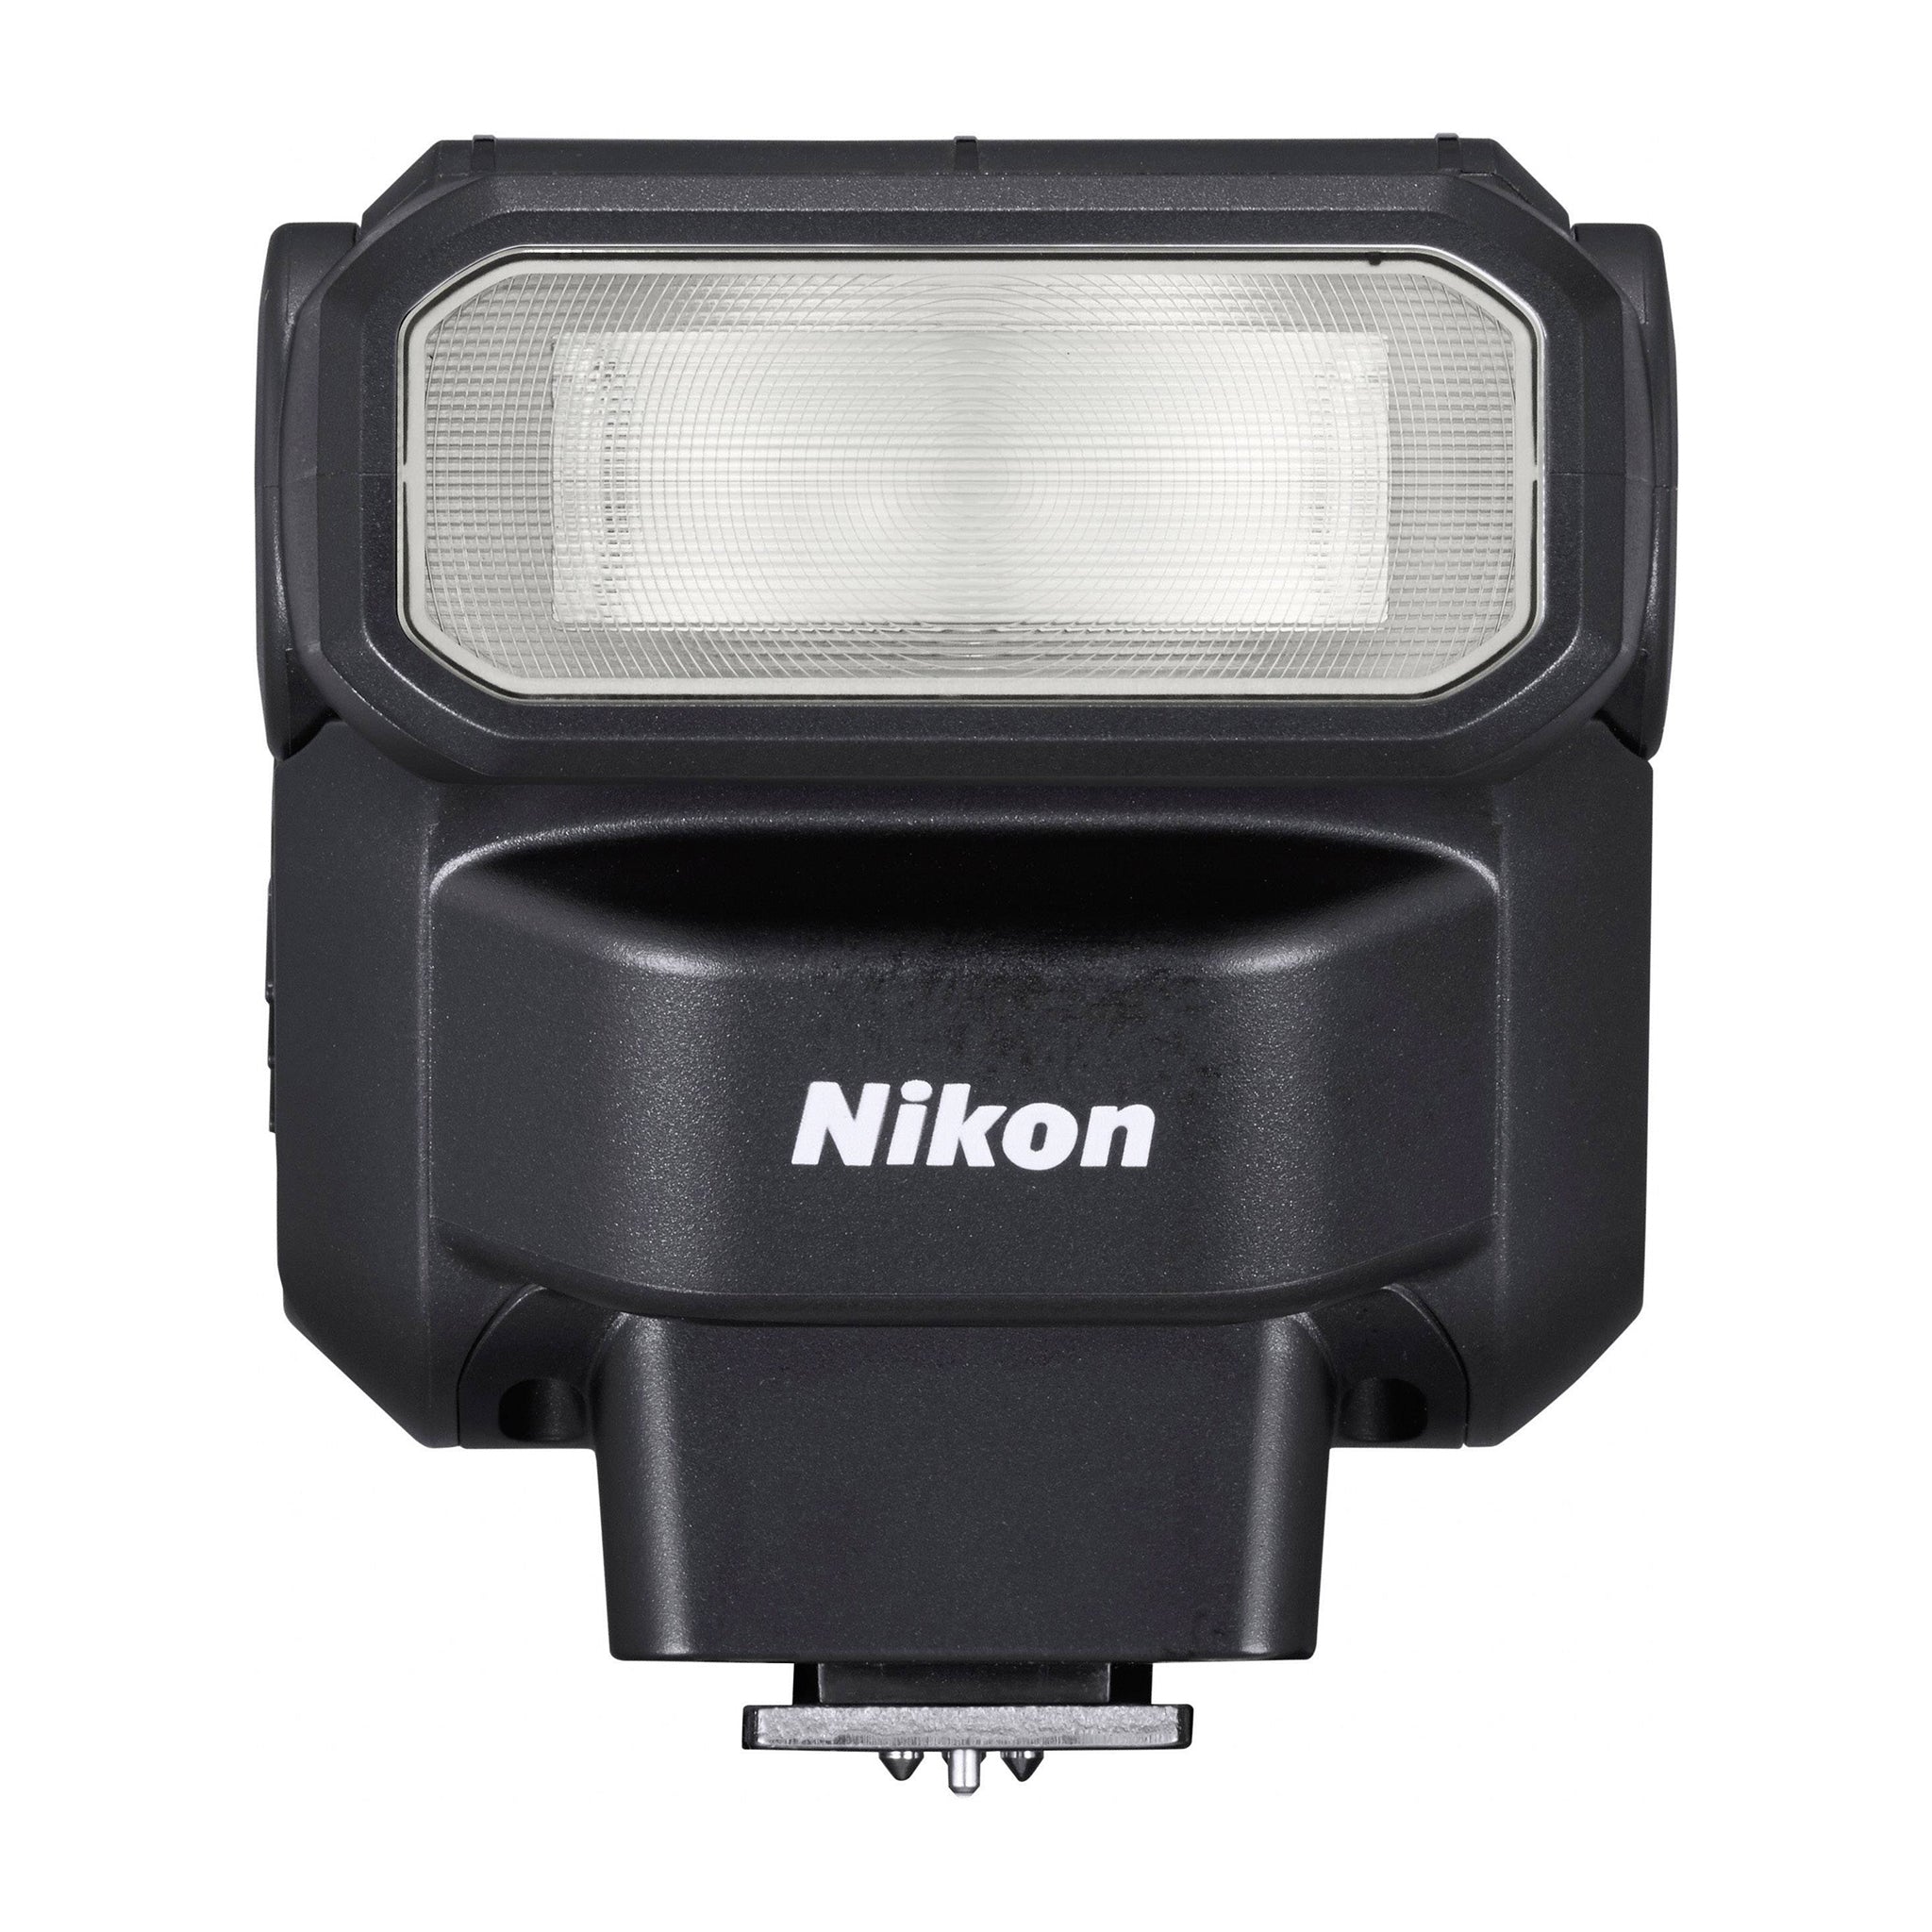 Nikon SB-300 Speedlight Flash